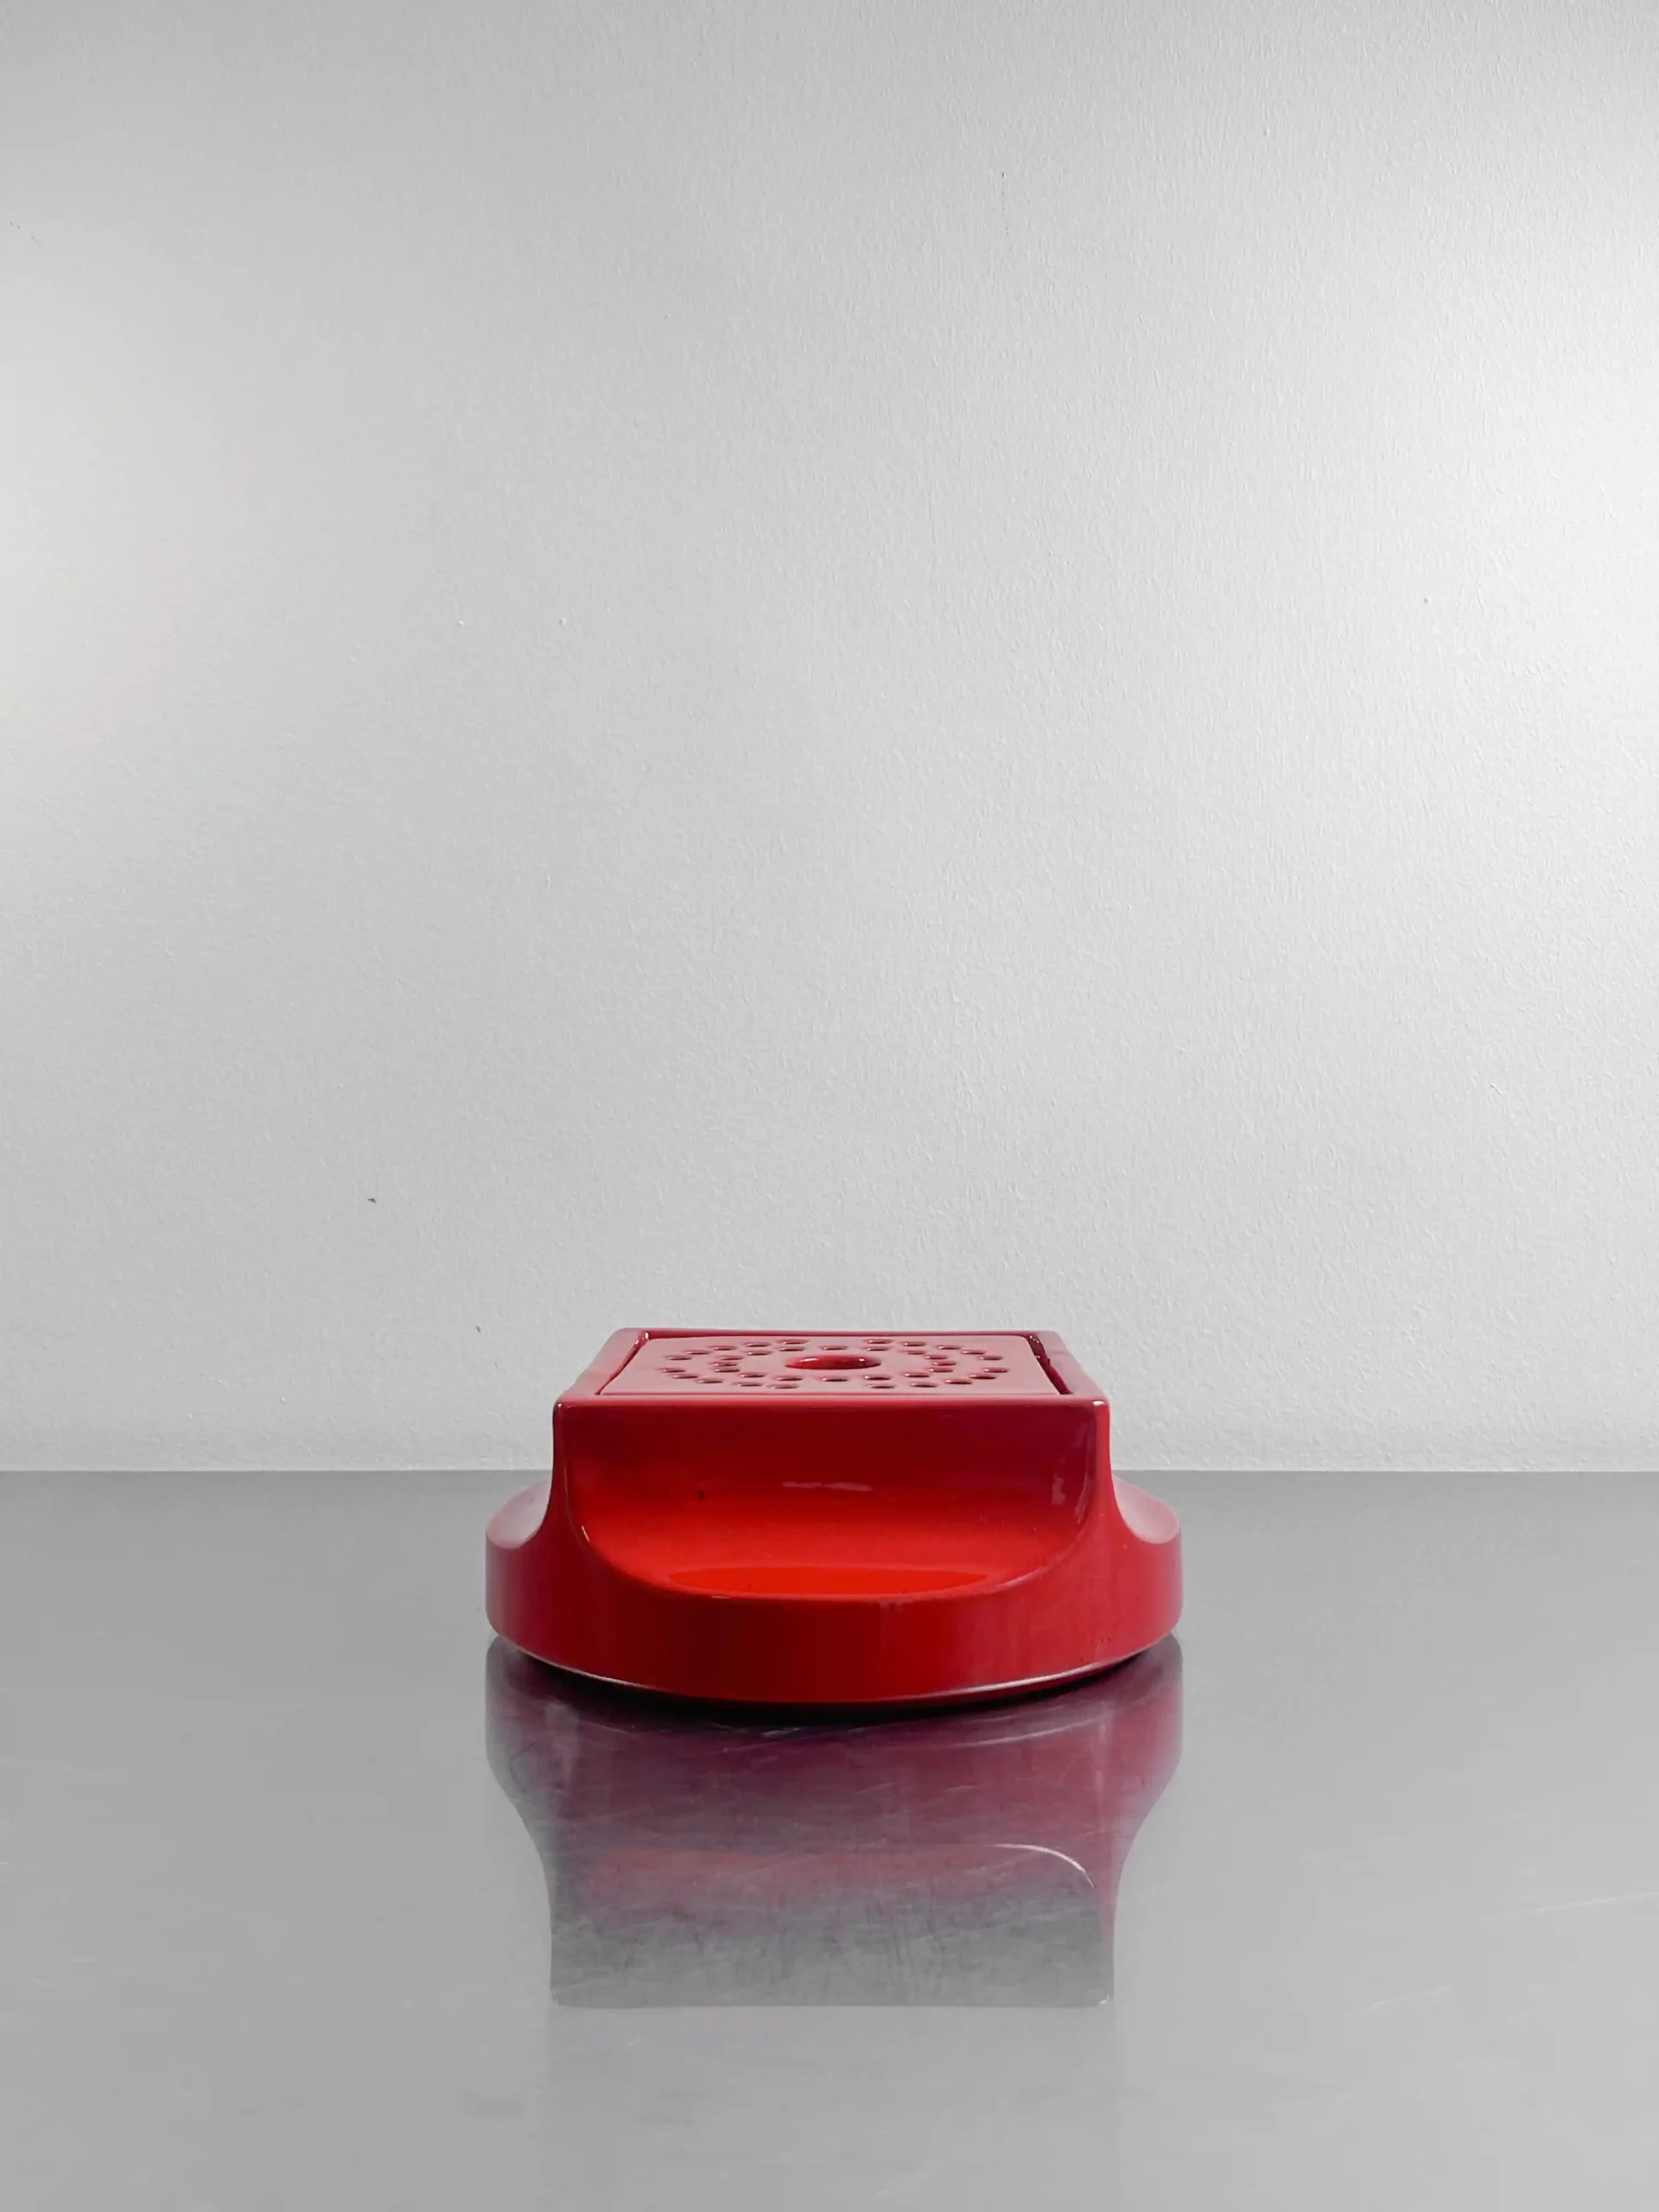 posacenere Gabbianelli progettato dallo studio OPI e realizzato negli anni '60, con struttura e coperchio in ceramica smaltata di un vibrante rosso. 60s ashtray